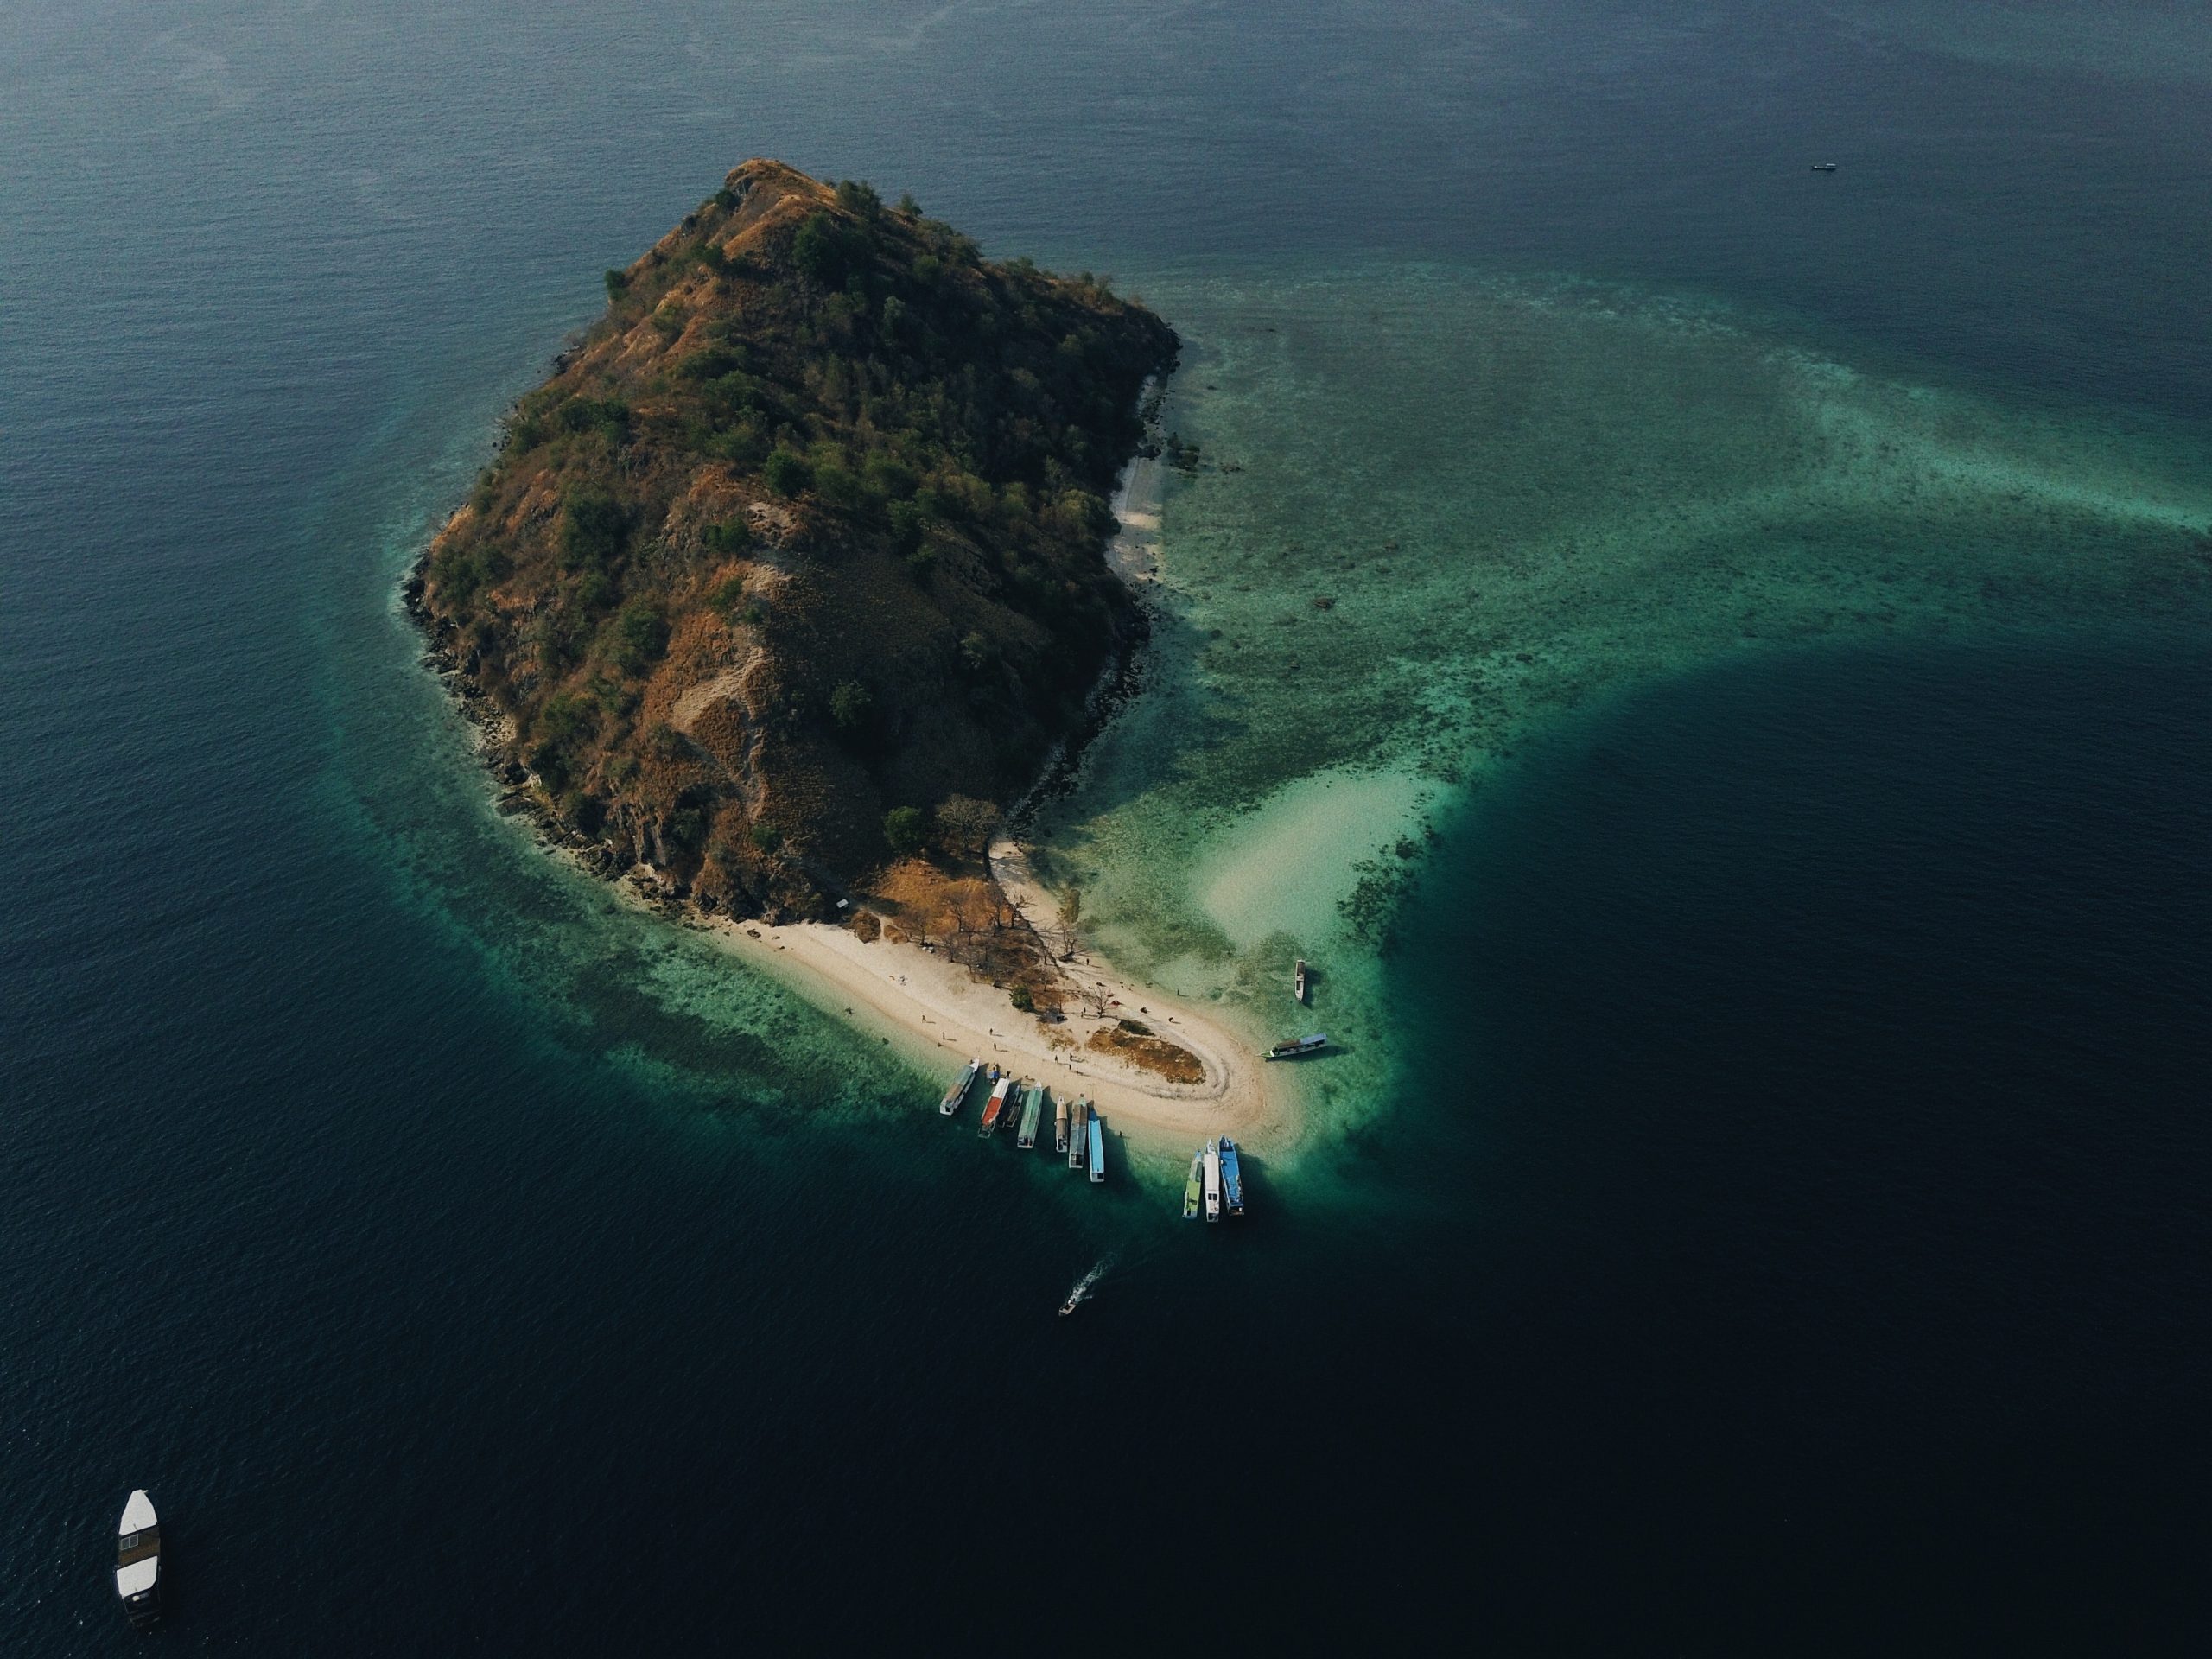 Indonesia has 17,000 islands: Gov’t